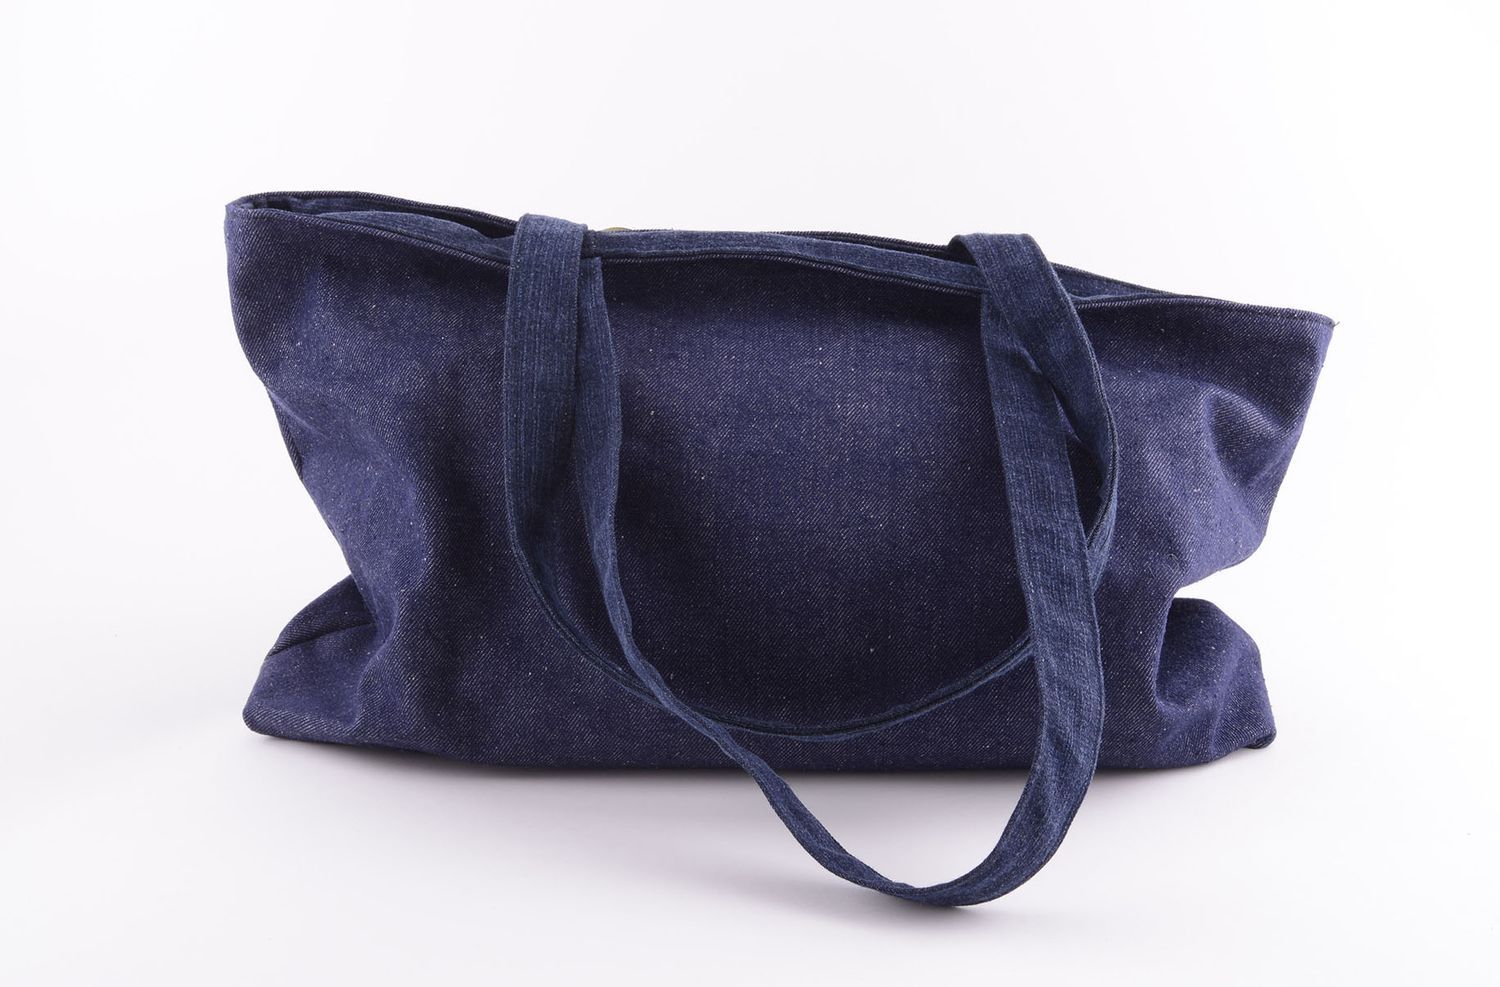 Сумка ручной работы сумка вышитая лентами сумка на плечо из джинса синяя фото 3